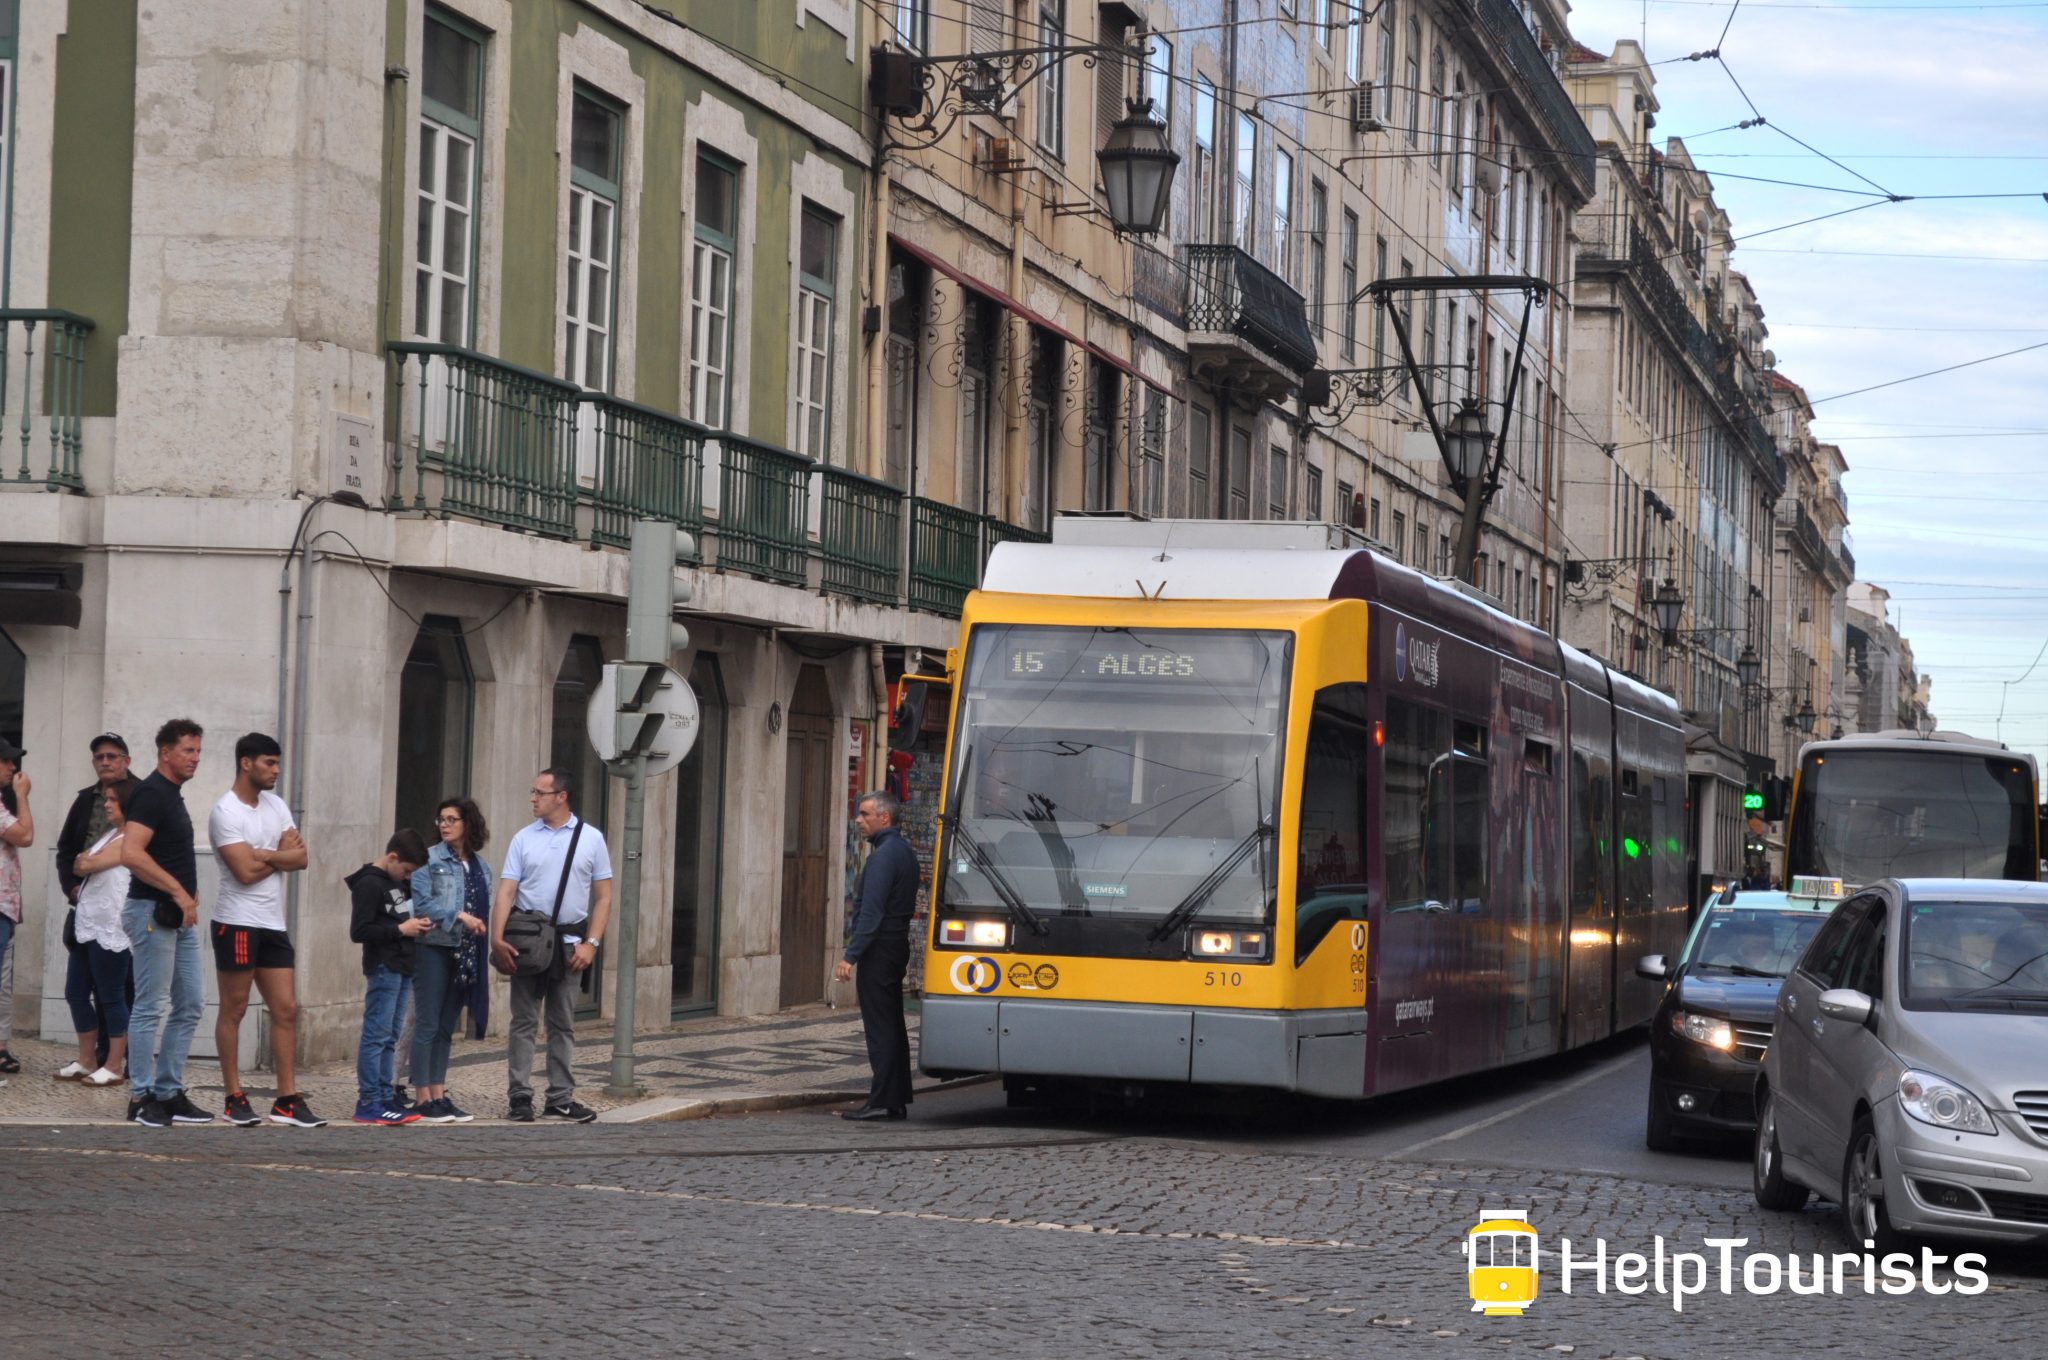 Lisbonne Tram 15 Alges